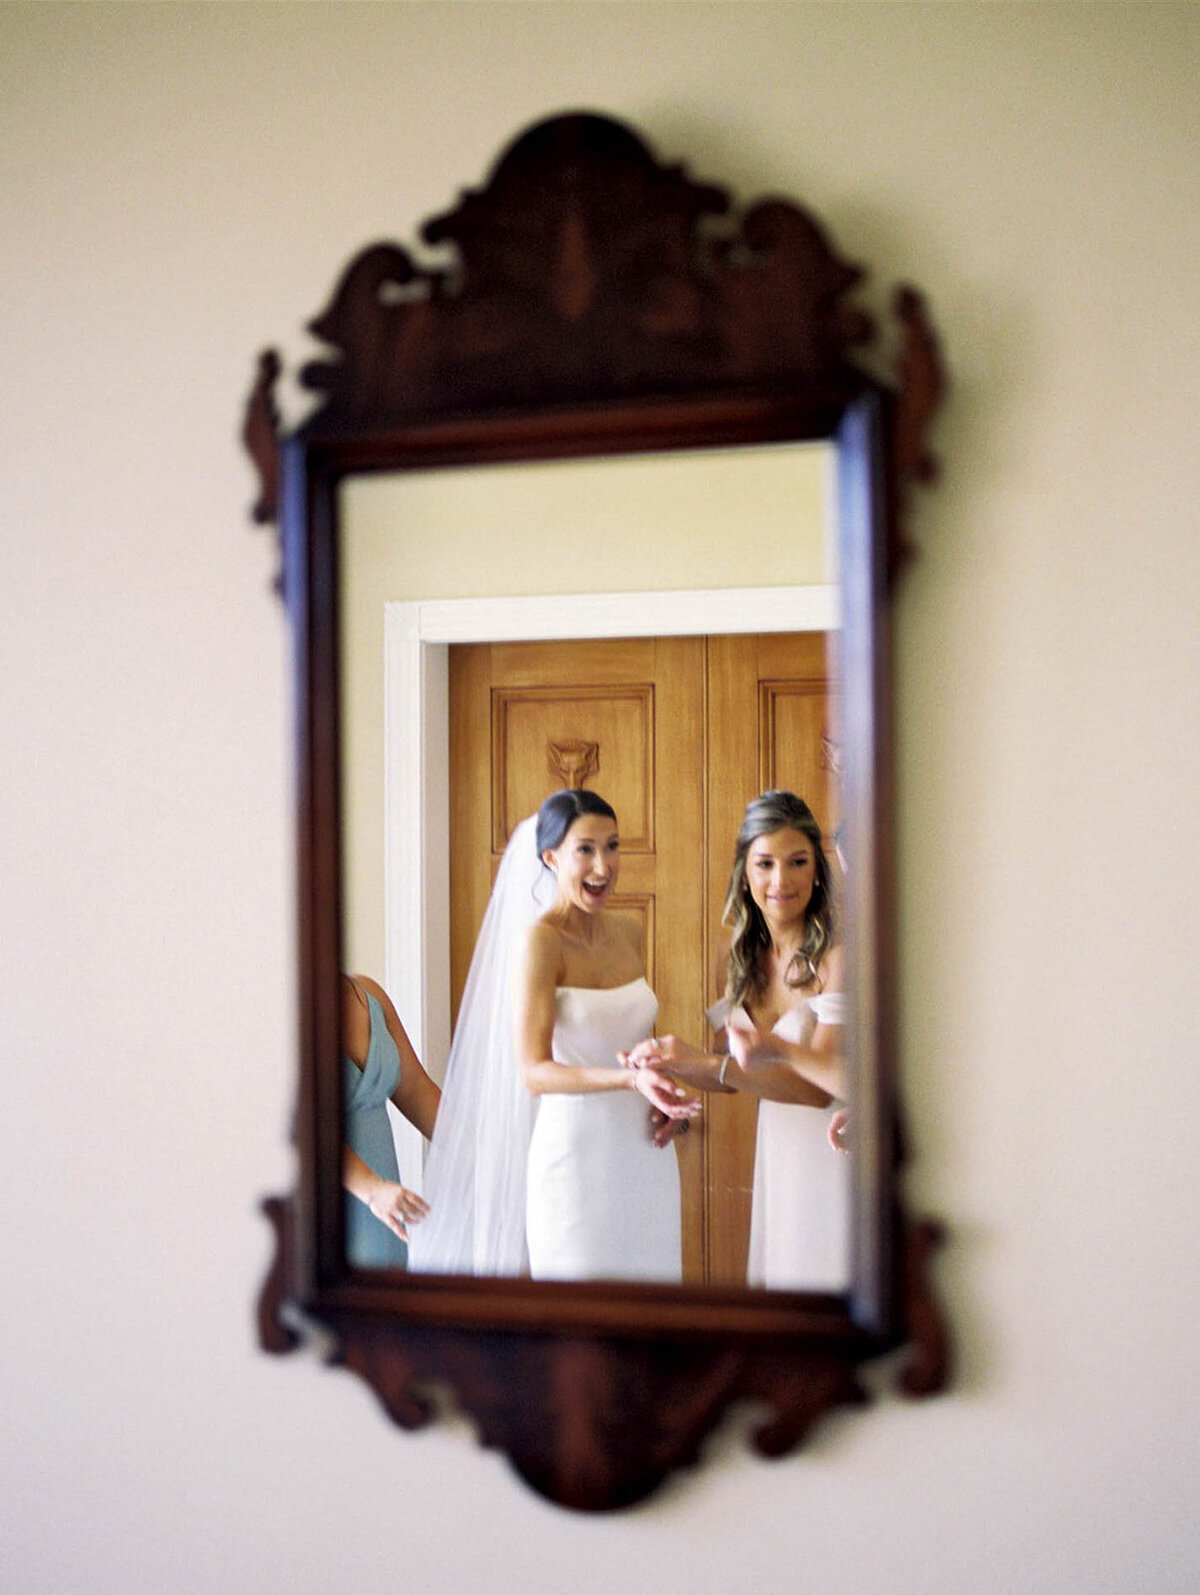 A bride with joy through a mirror  at bridal suite